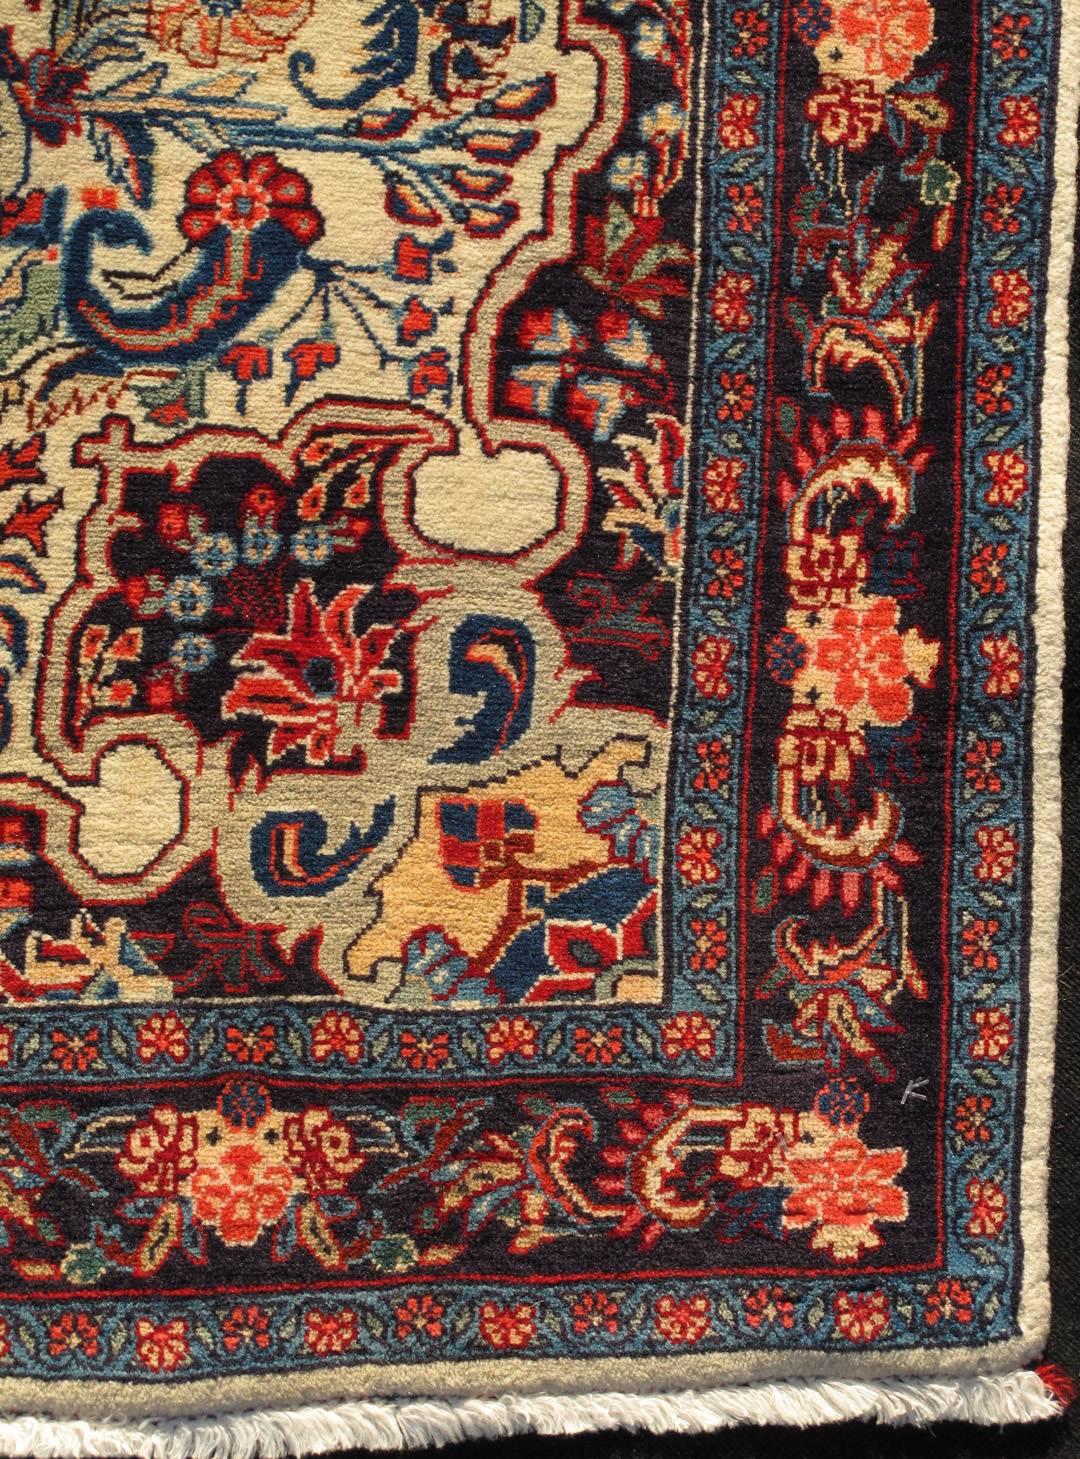 Persian Bidjar Vintage Rug in Ivory Background, Multi colors and Classic Design Rug/10-KE-304

Se on ivory background, this Persian carpet features a classic design in variety of colors  
Measures: 3'6 x 5'1.